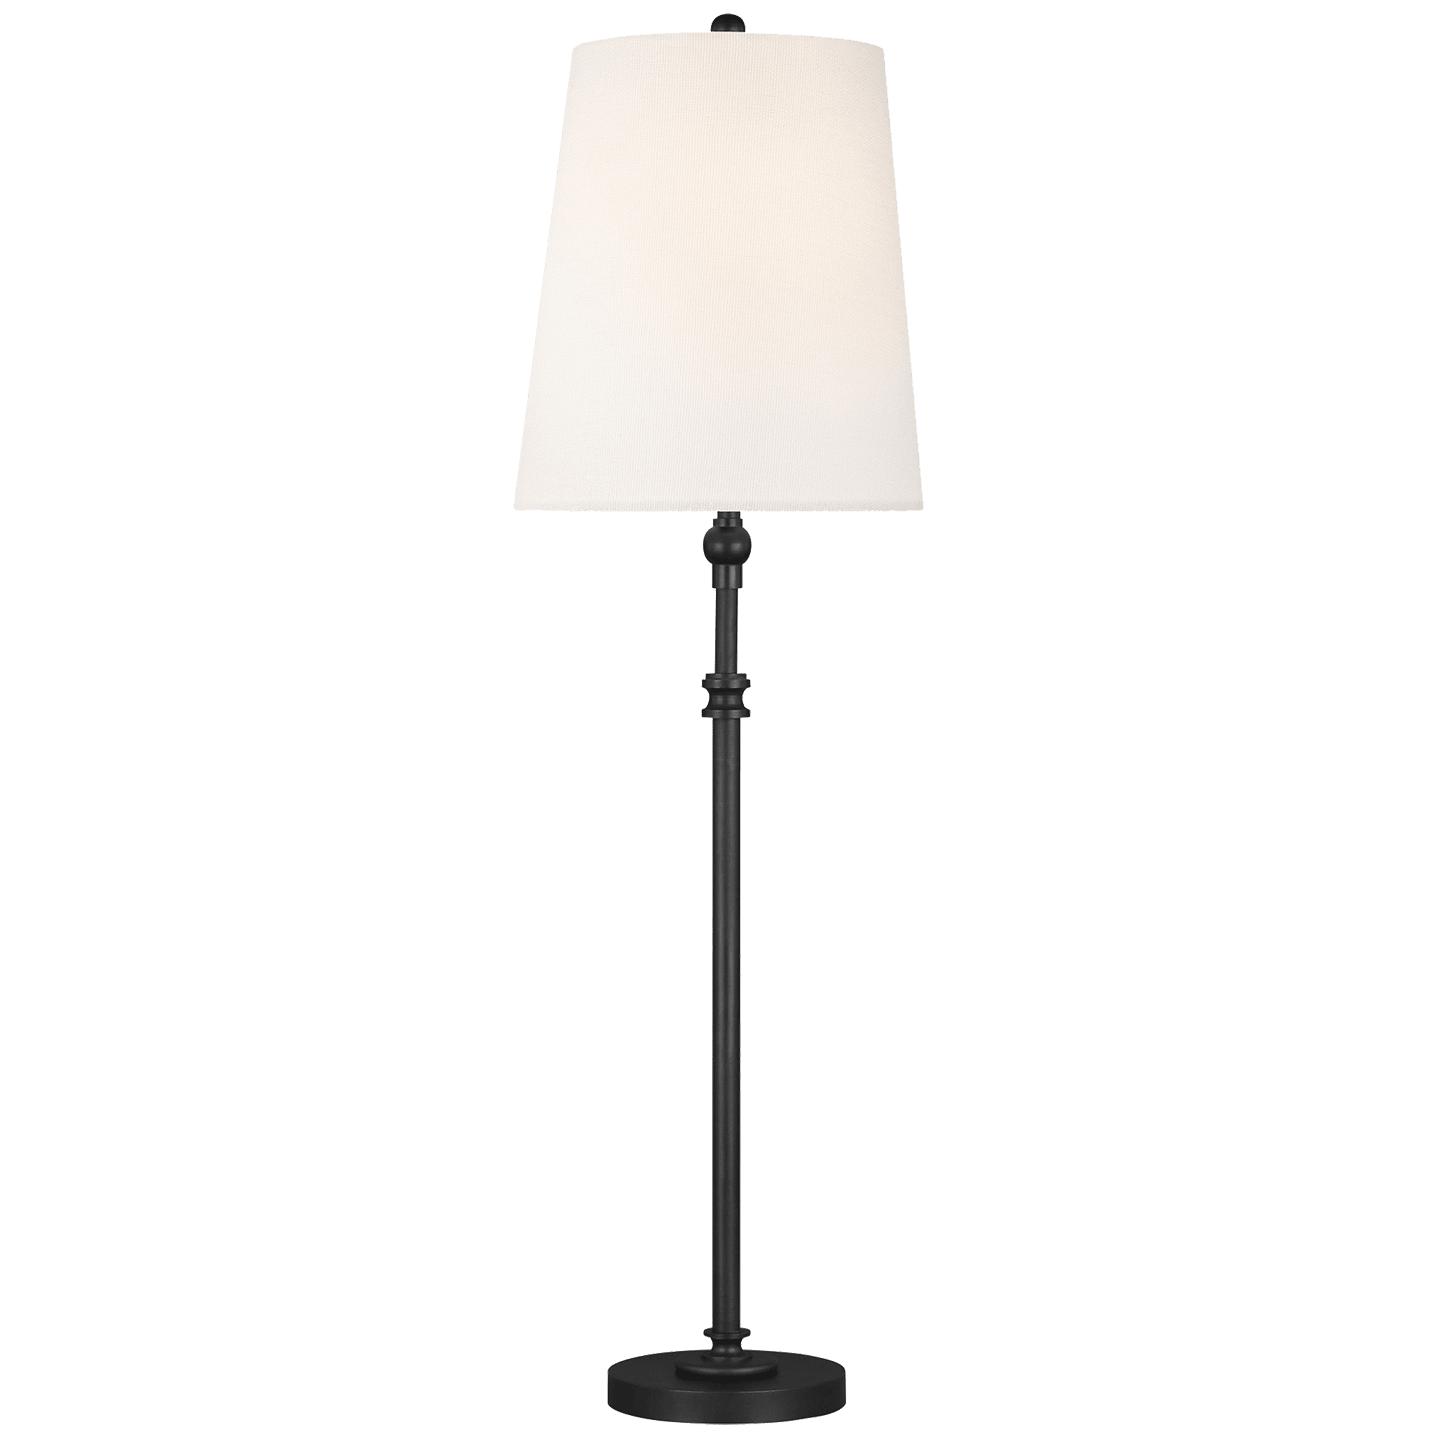 Купить Настольная лампа Capri Buffet Lamp в интернет-магазине roooms.ru